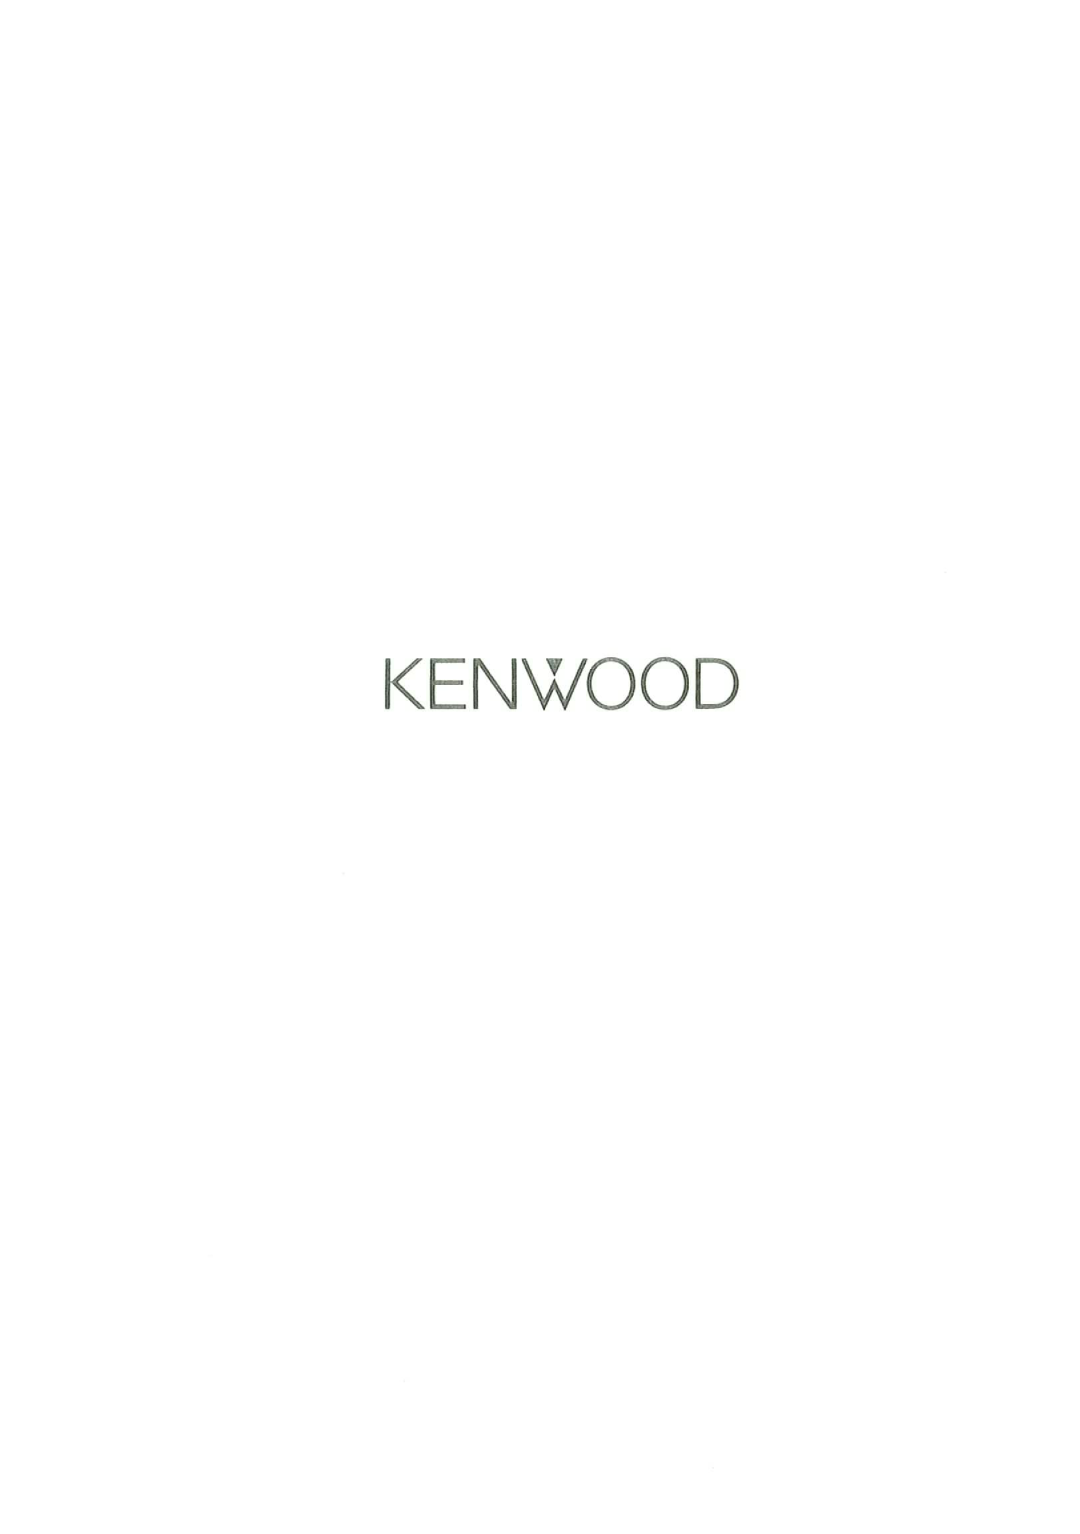 Kenwood GE-940 manual 